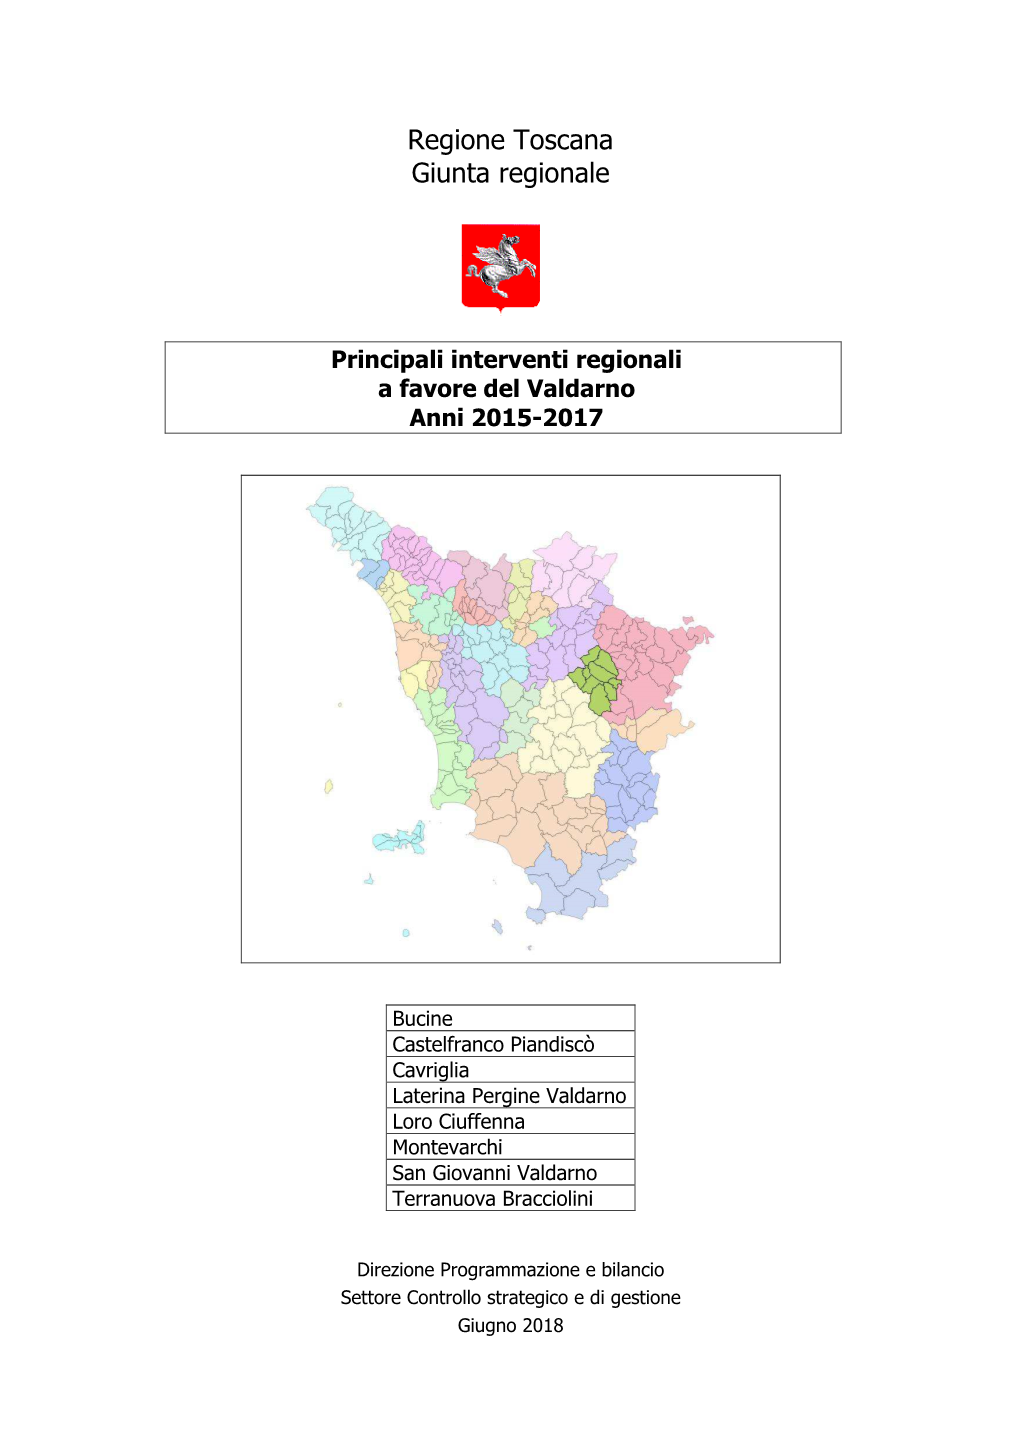 Principali Interventi Regionali a Favore Del Valdarno Anni 2015-2017